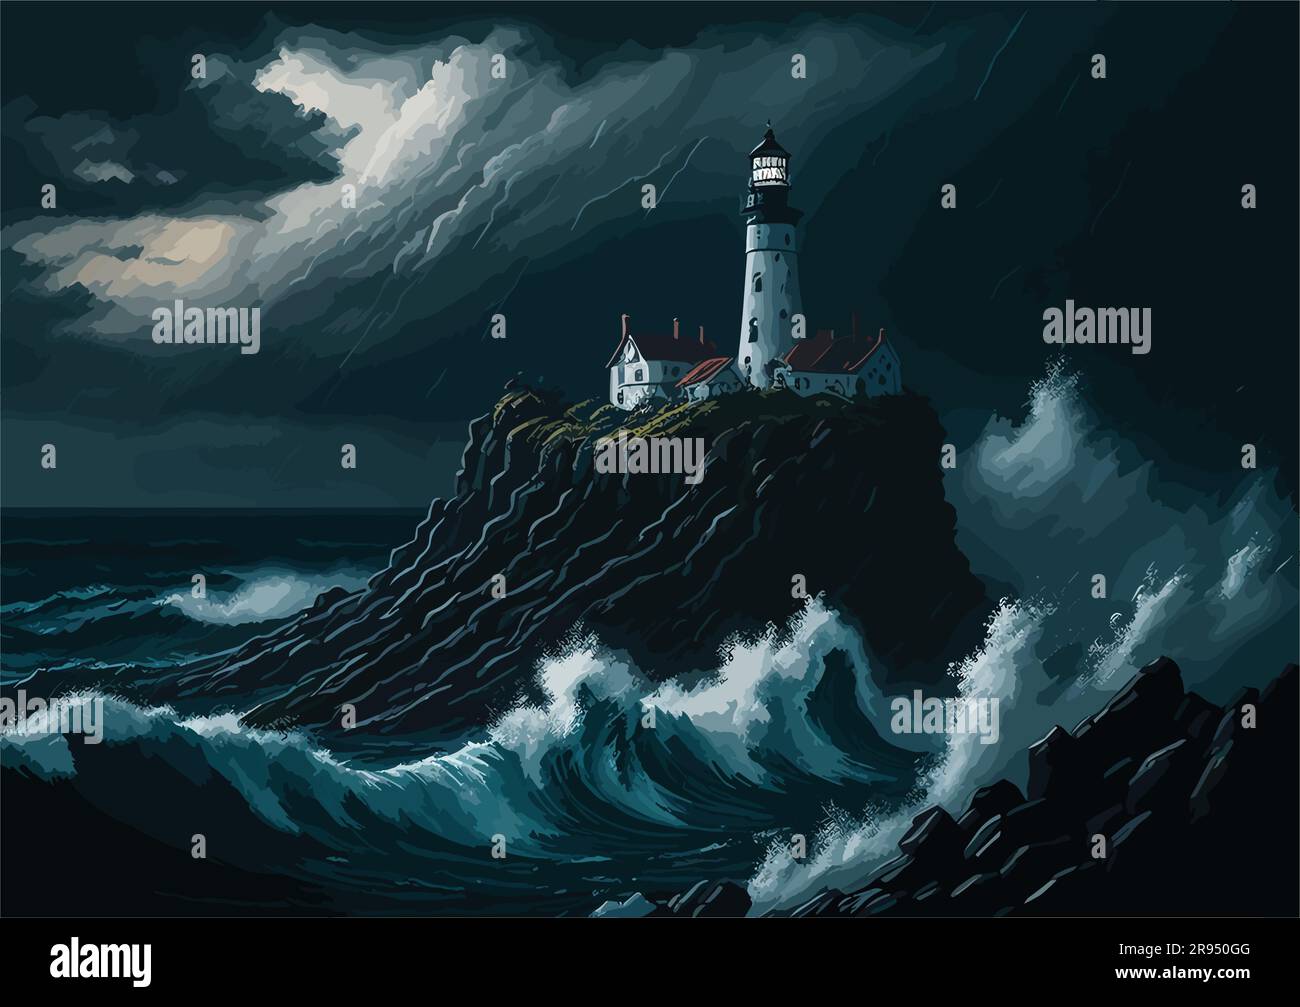 image de style peinture à l'huile d'une plage tranquille au crépuscule, avec un phare seul debout contre le ciel sombre. Capturez la chaleur et l'or Illustration de Vecteur